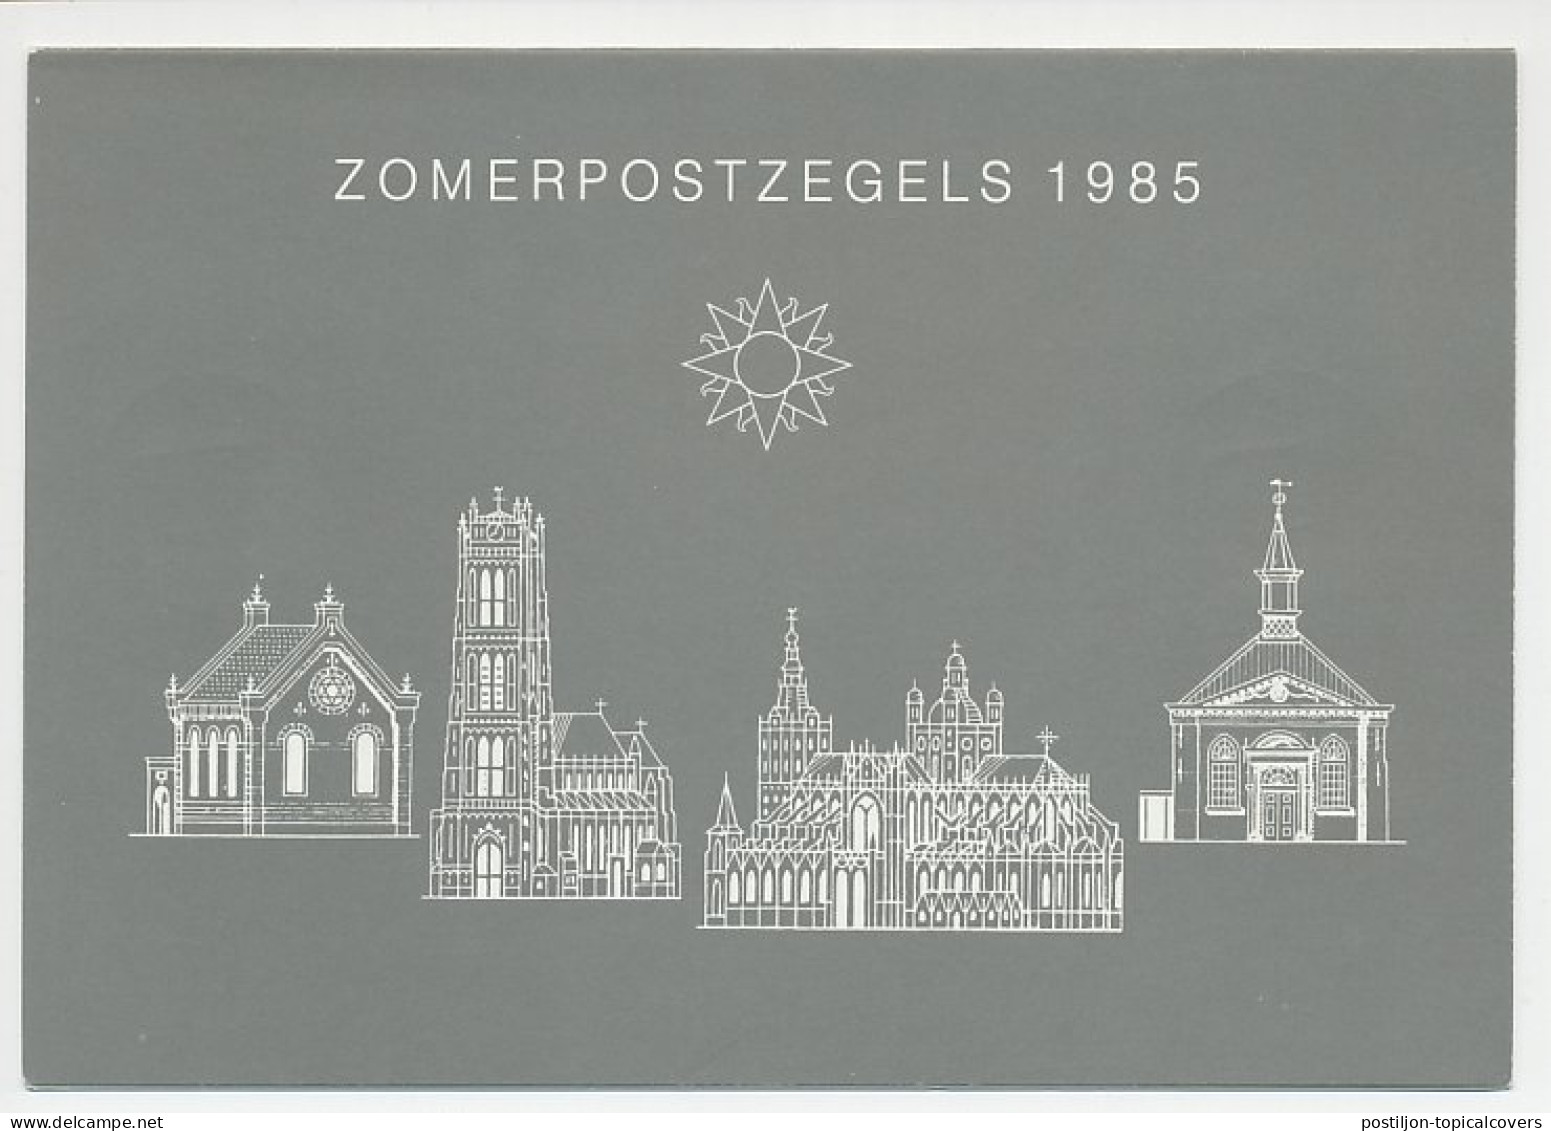 Zomerbedankkaart 1985 - Complete Serie Bijgeplakt  - Non Classés